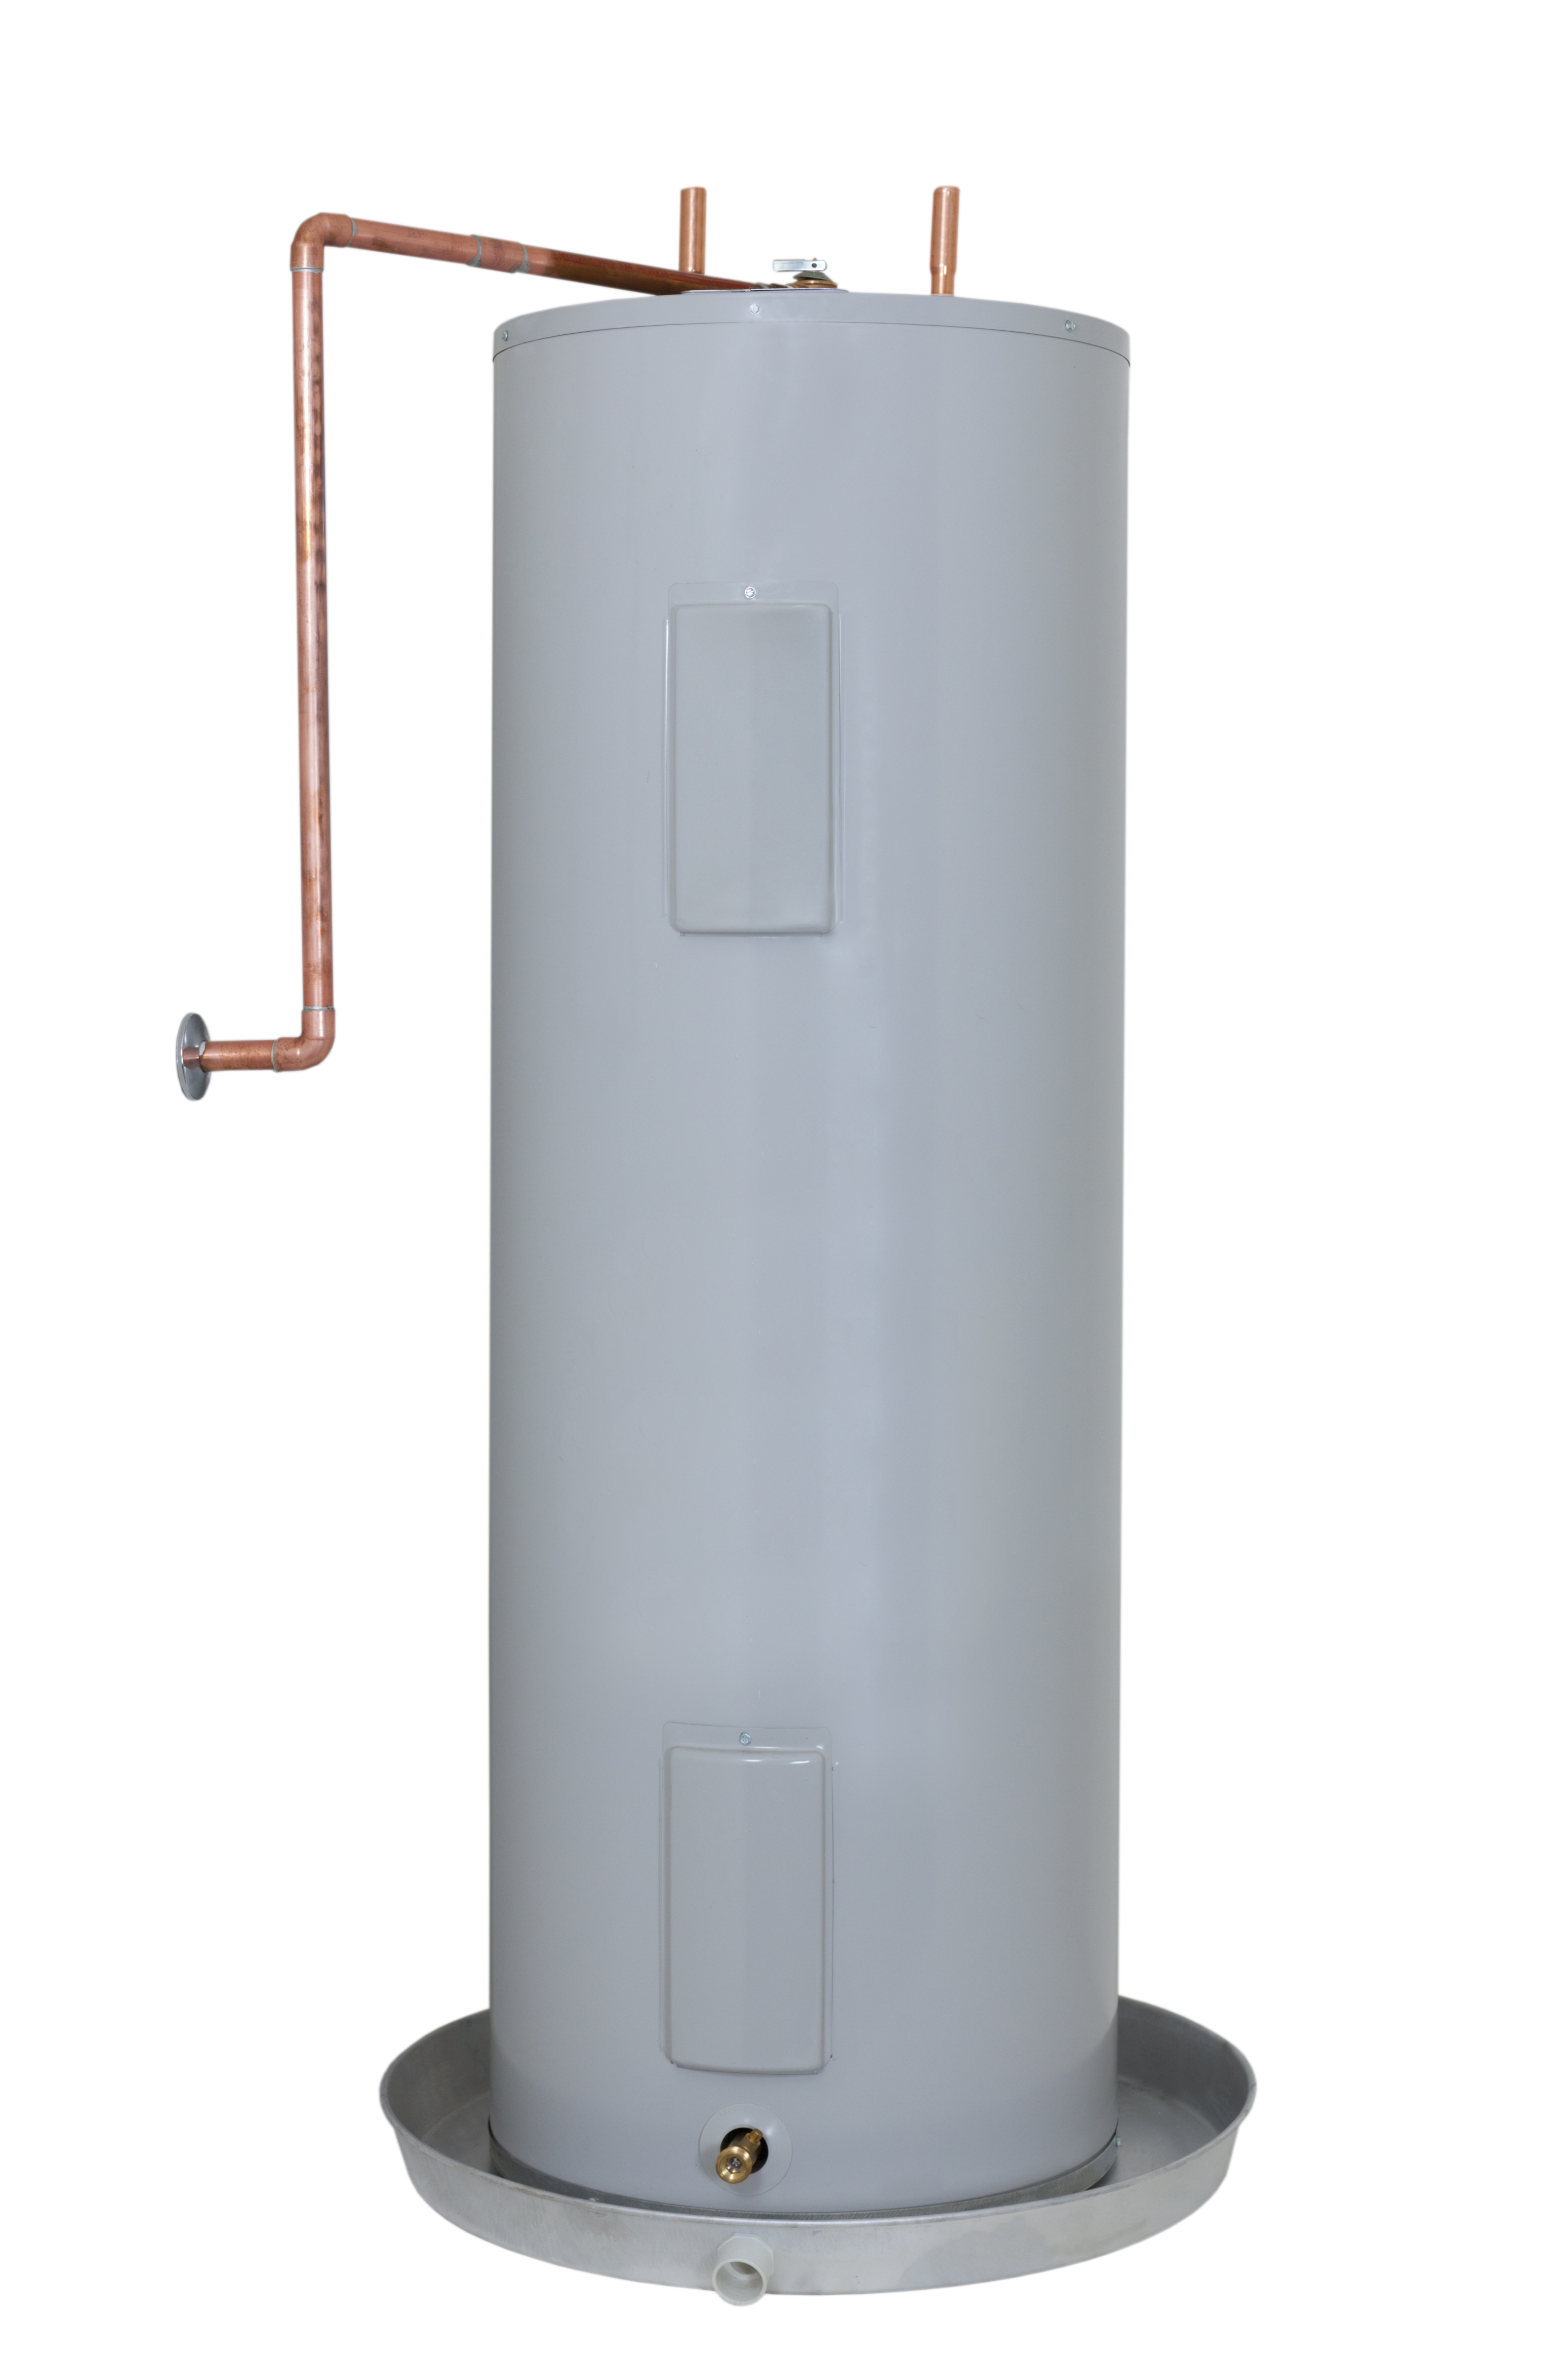 rheem-utility-model-hybrid-electric-water-heater-rebate-applied-at